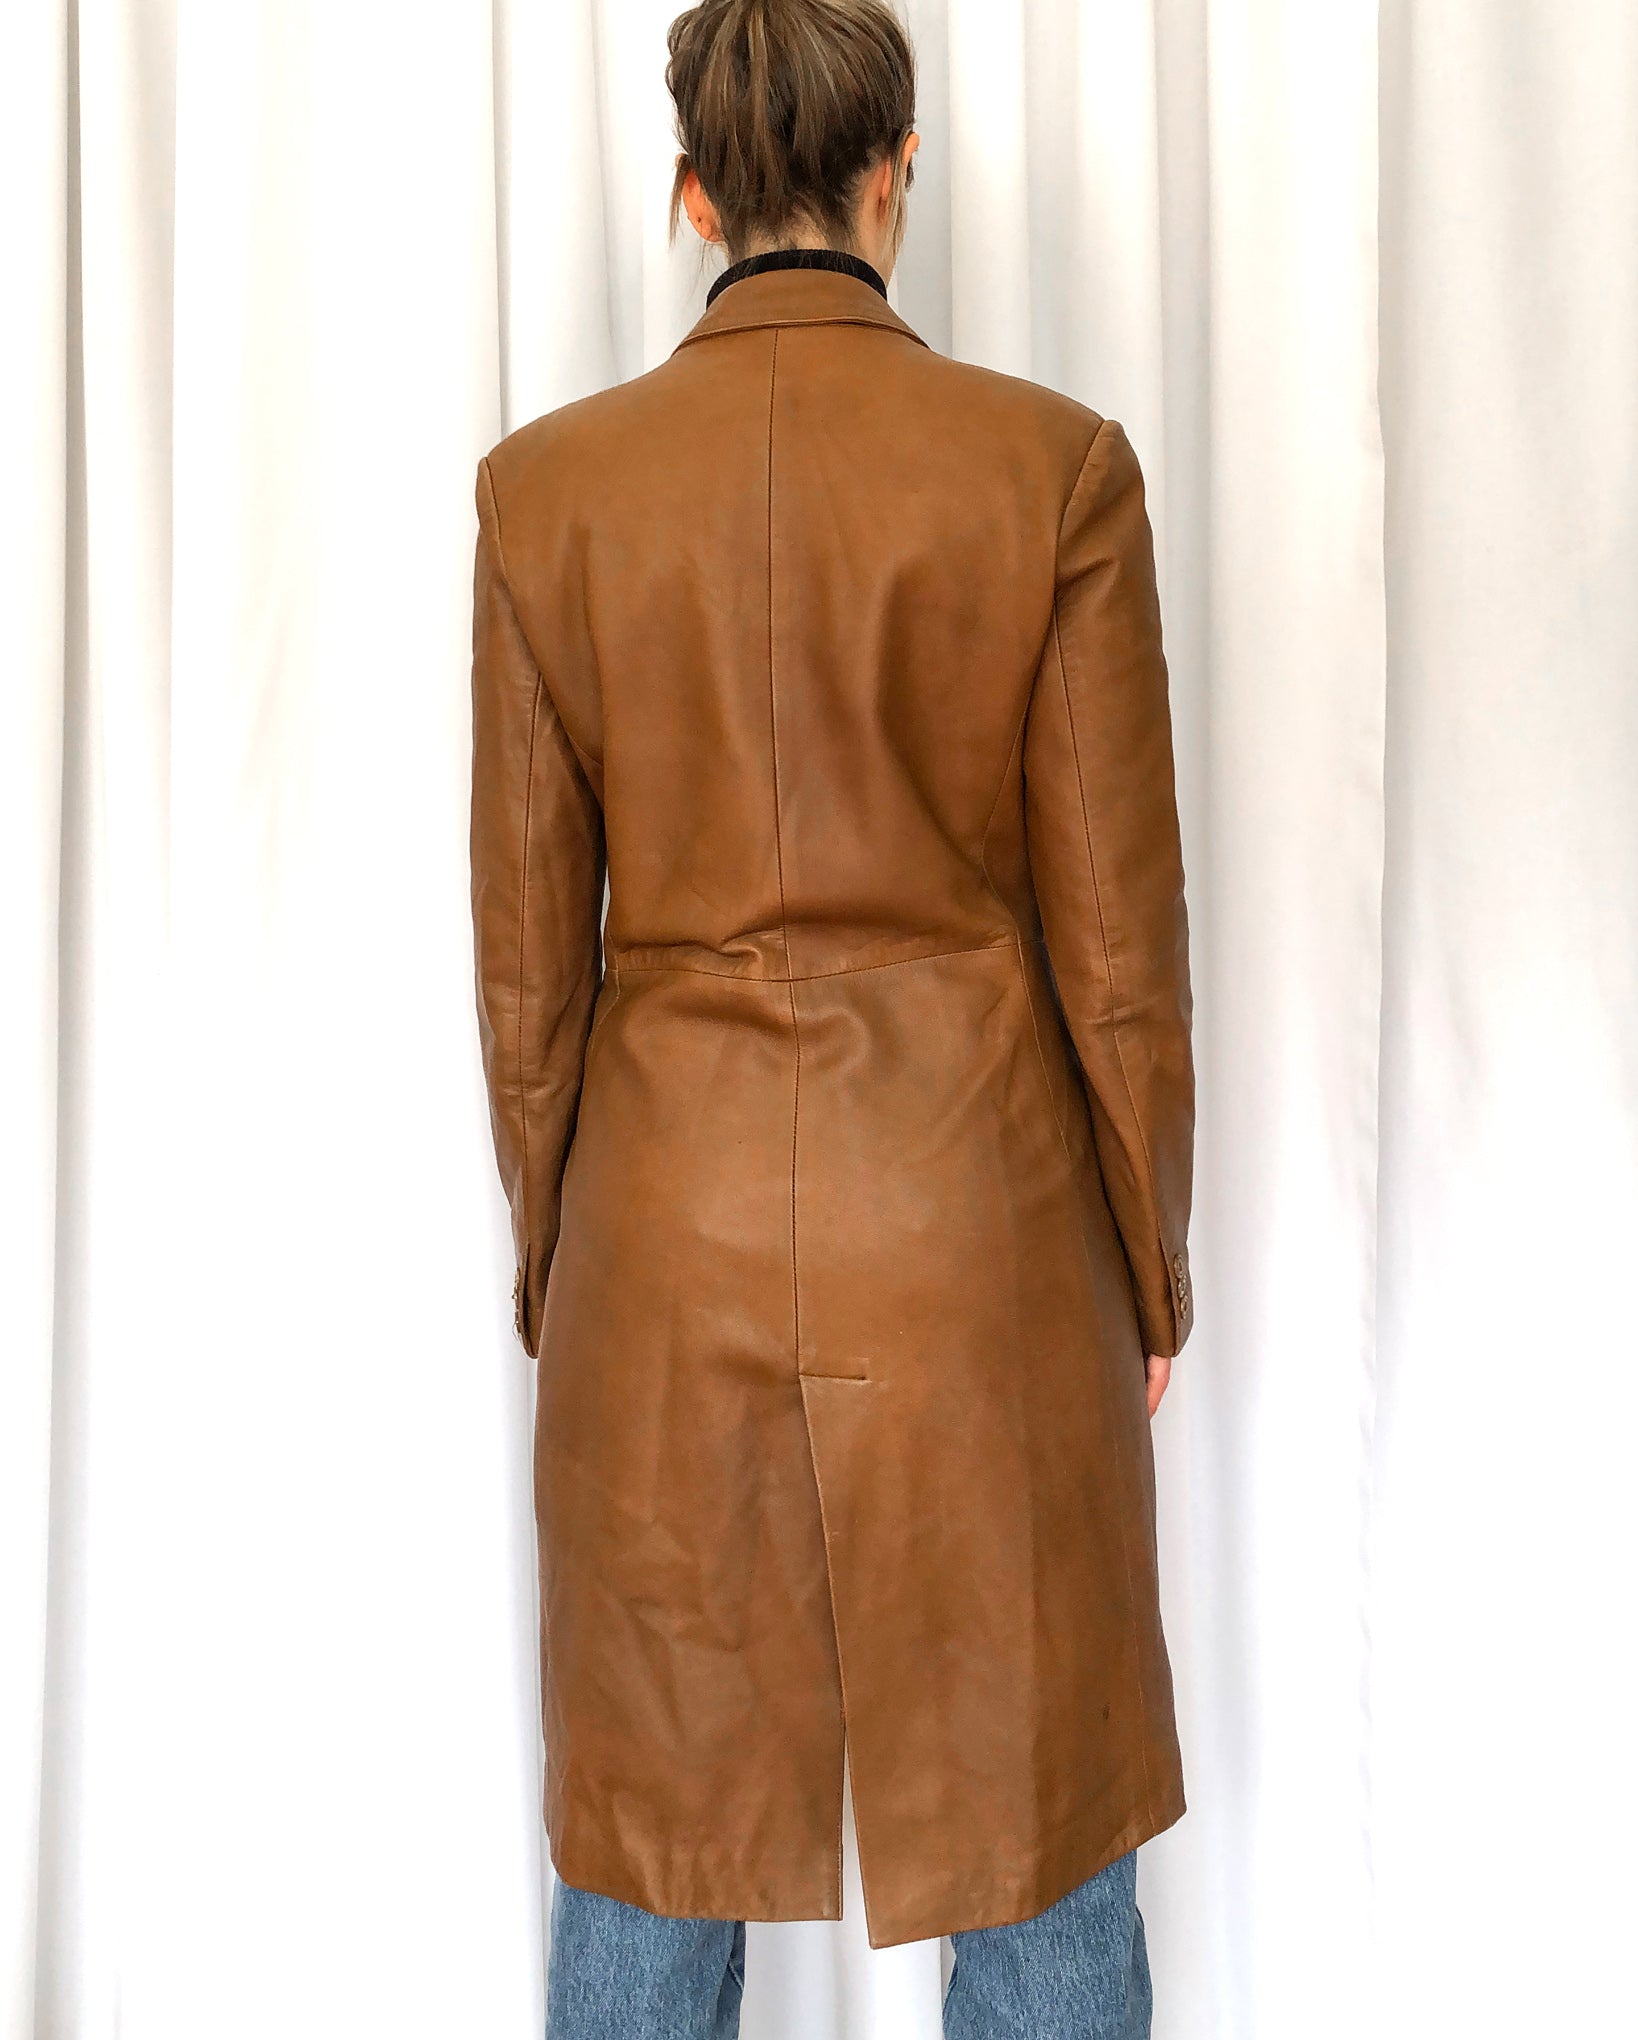 70s Vintage Caramel Leather 3/4 Length Jacket